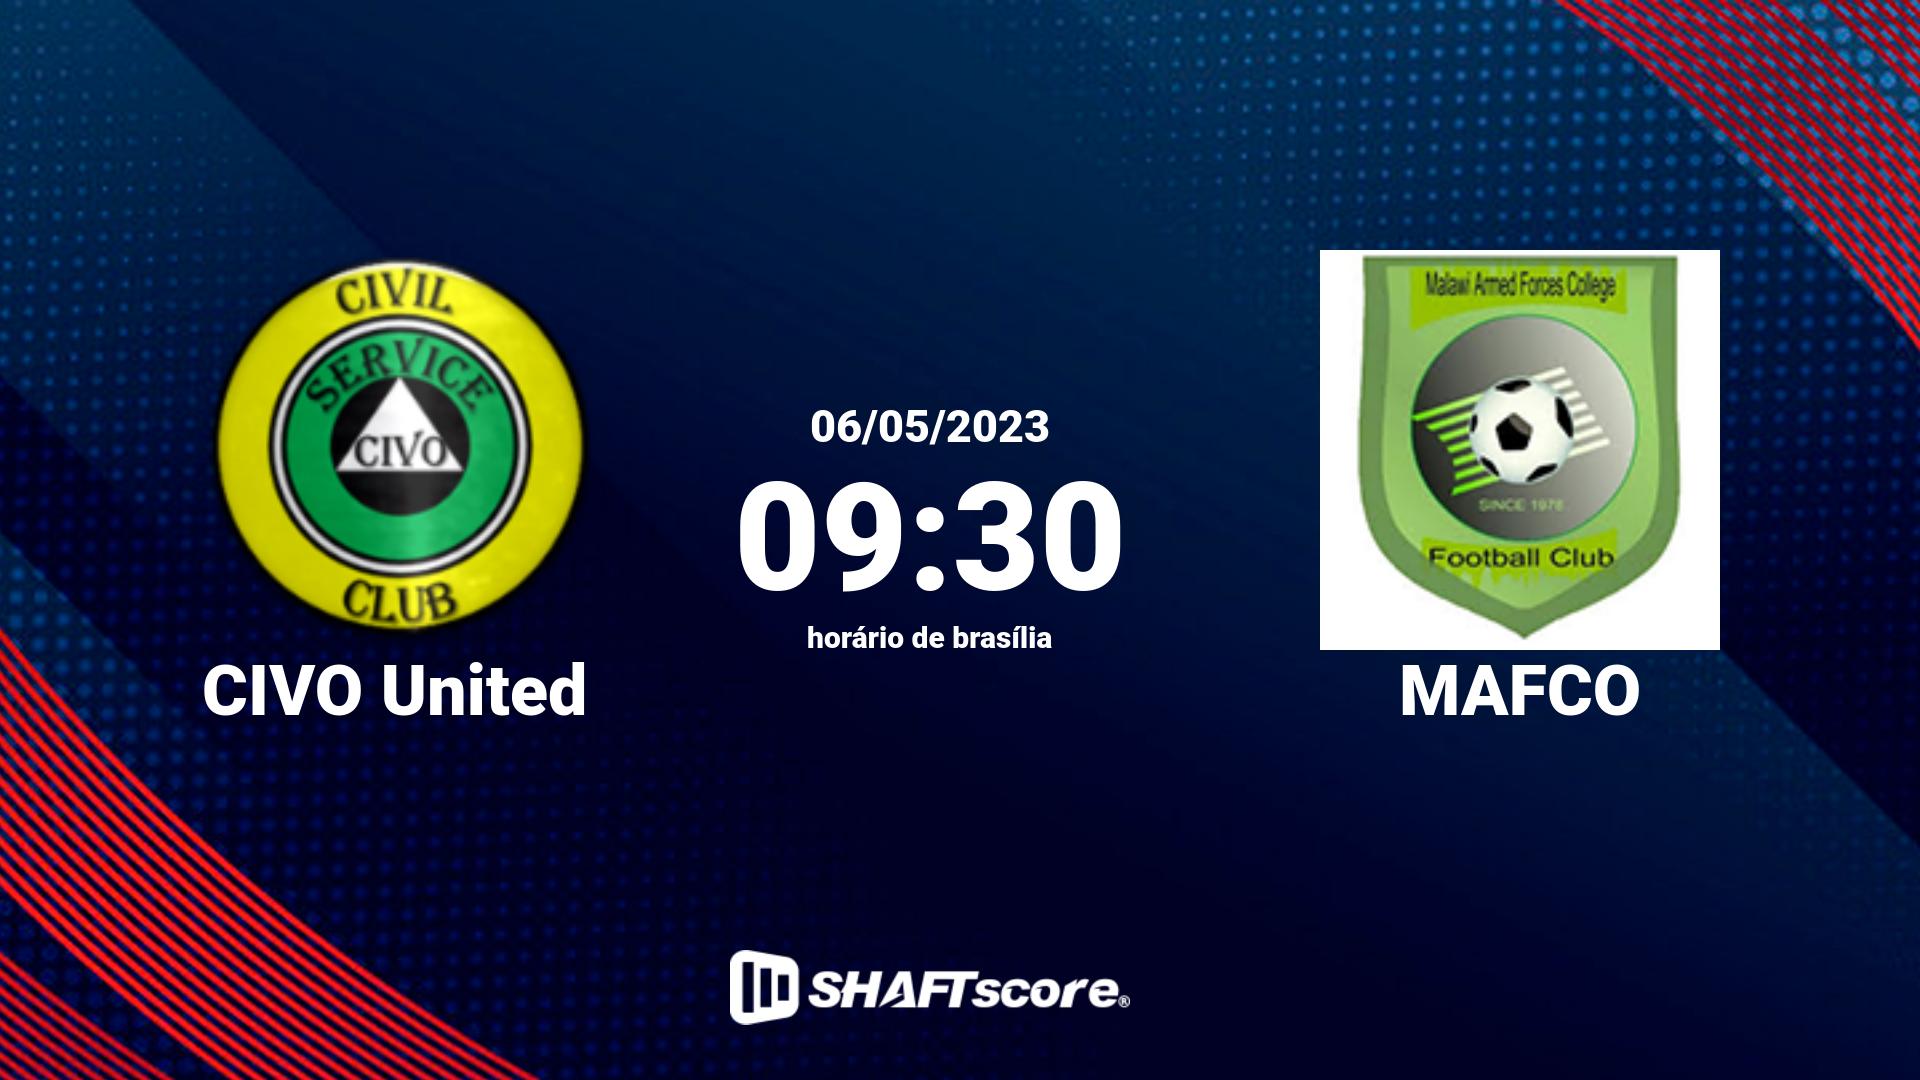 Estatísticas do jogo CIVO United vs MAFCO 06.05 09:30